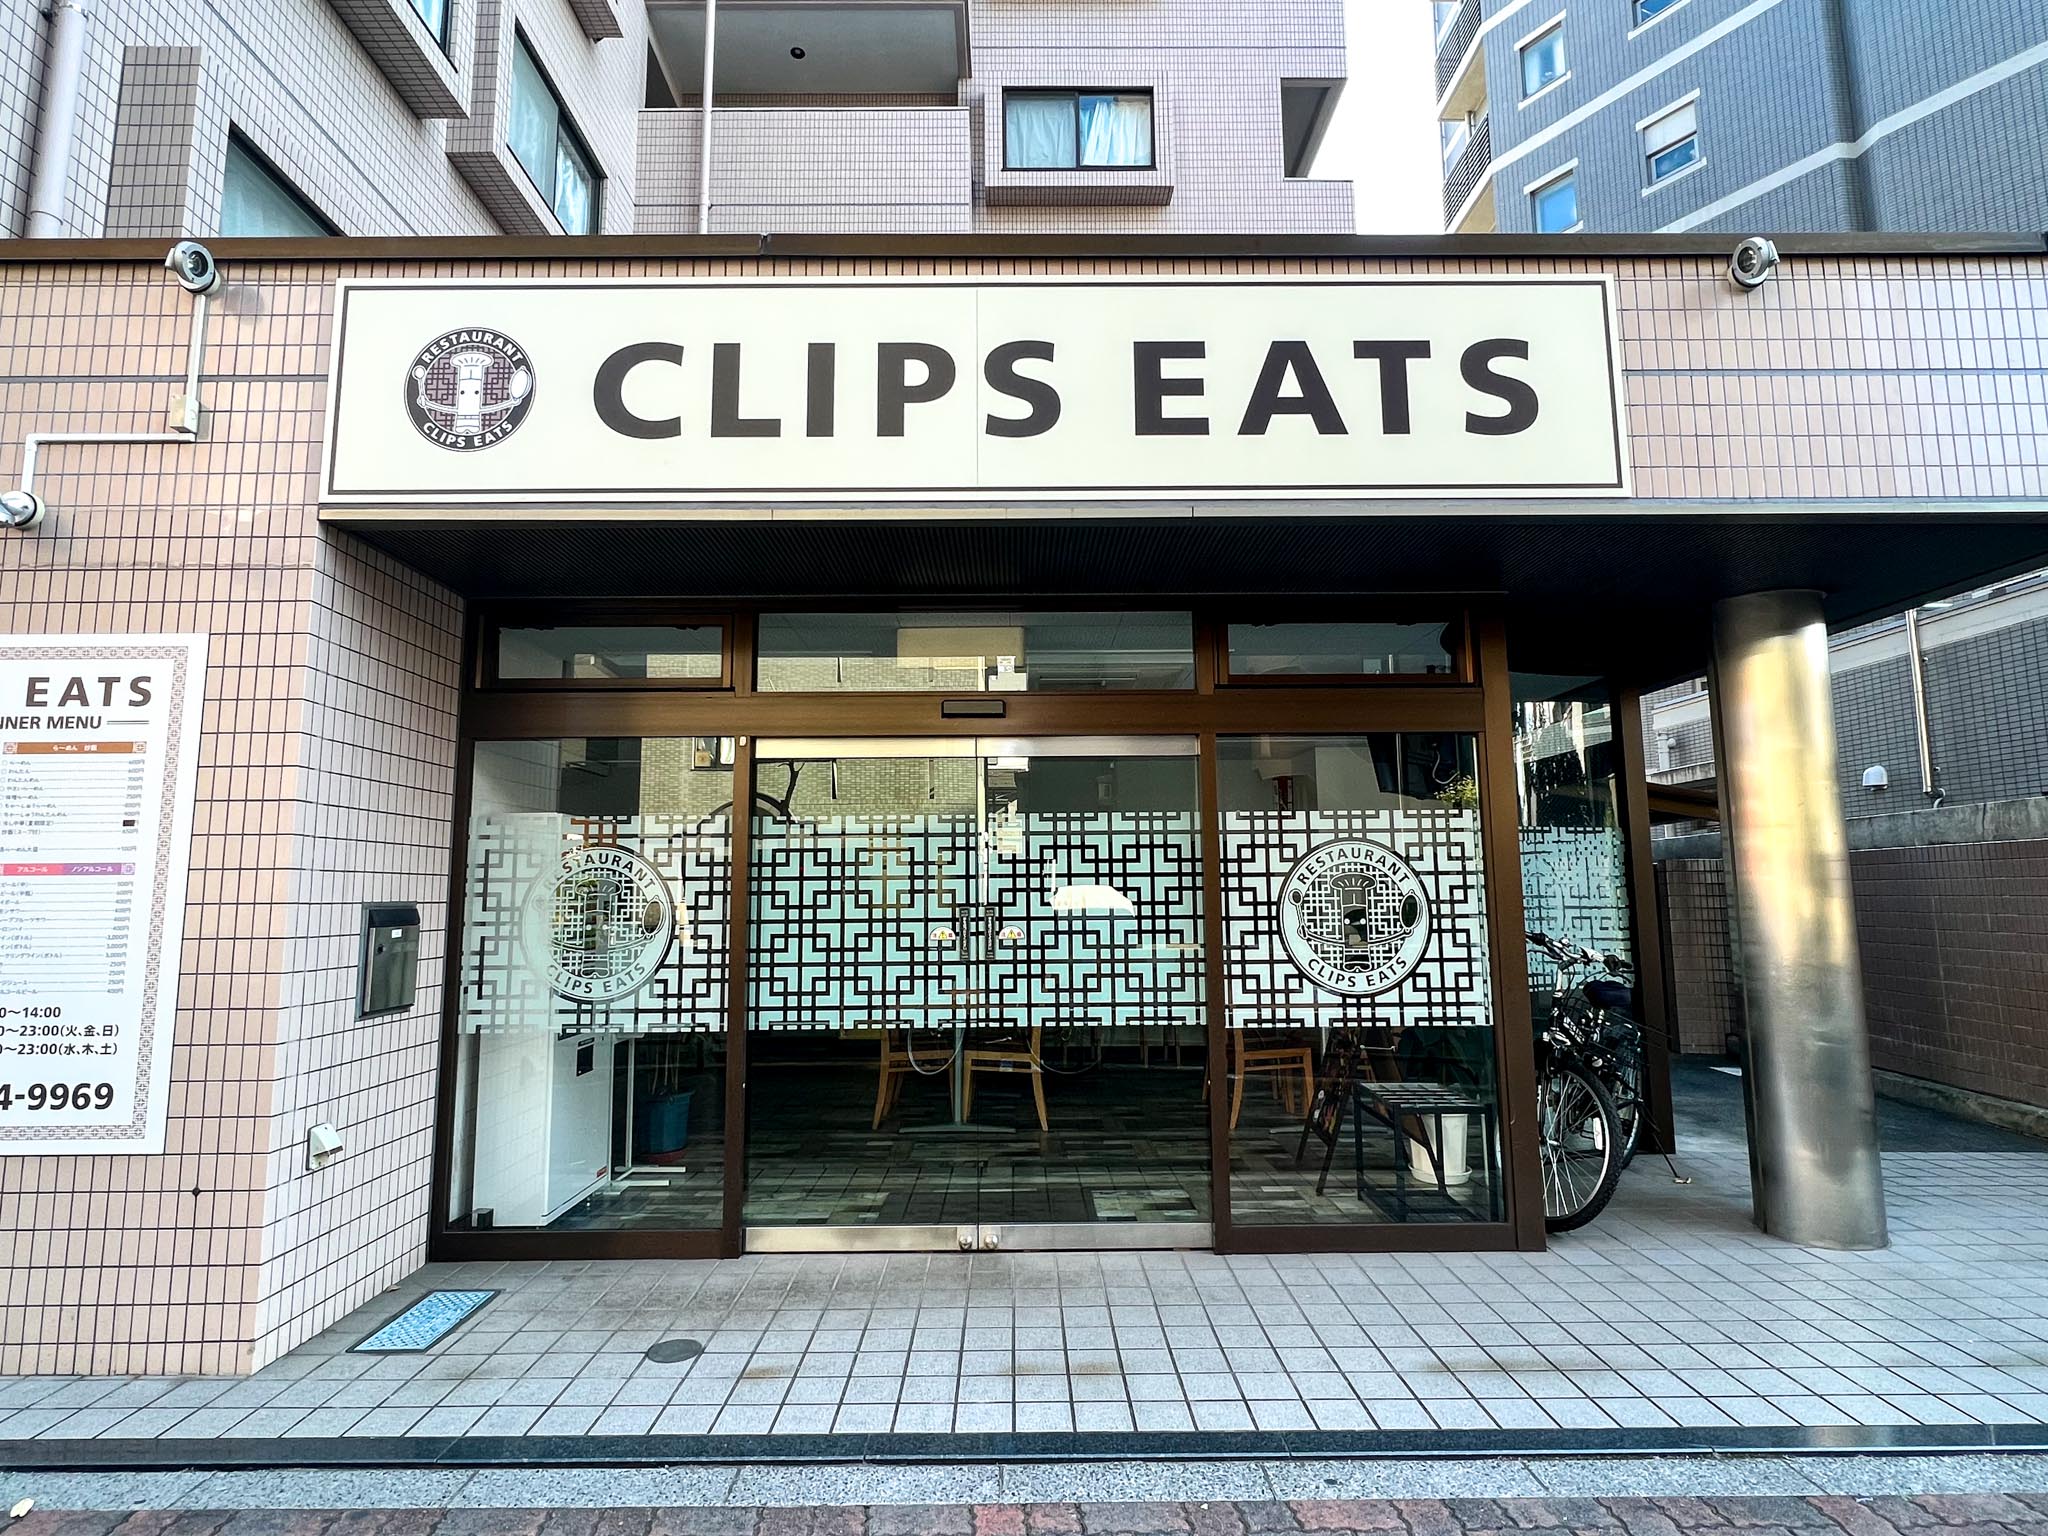 CLIPS EATS